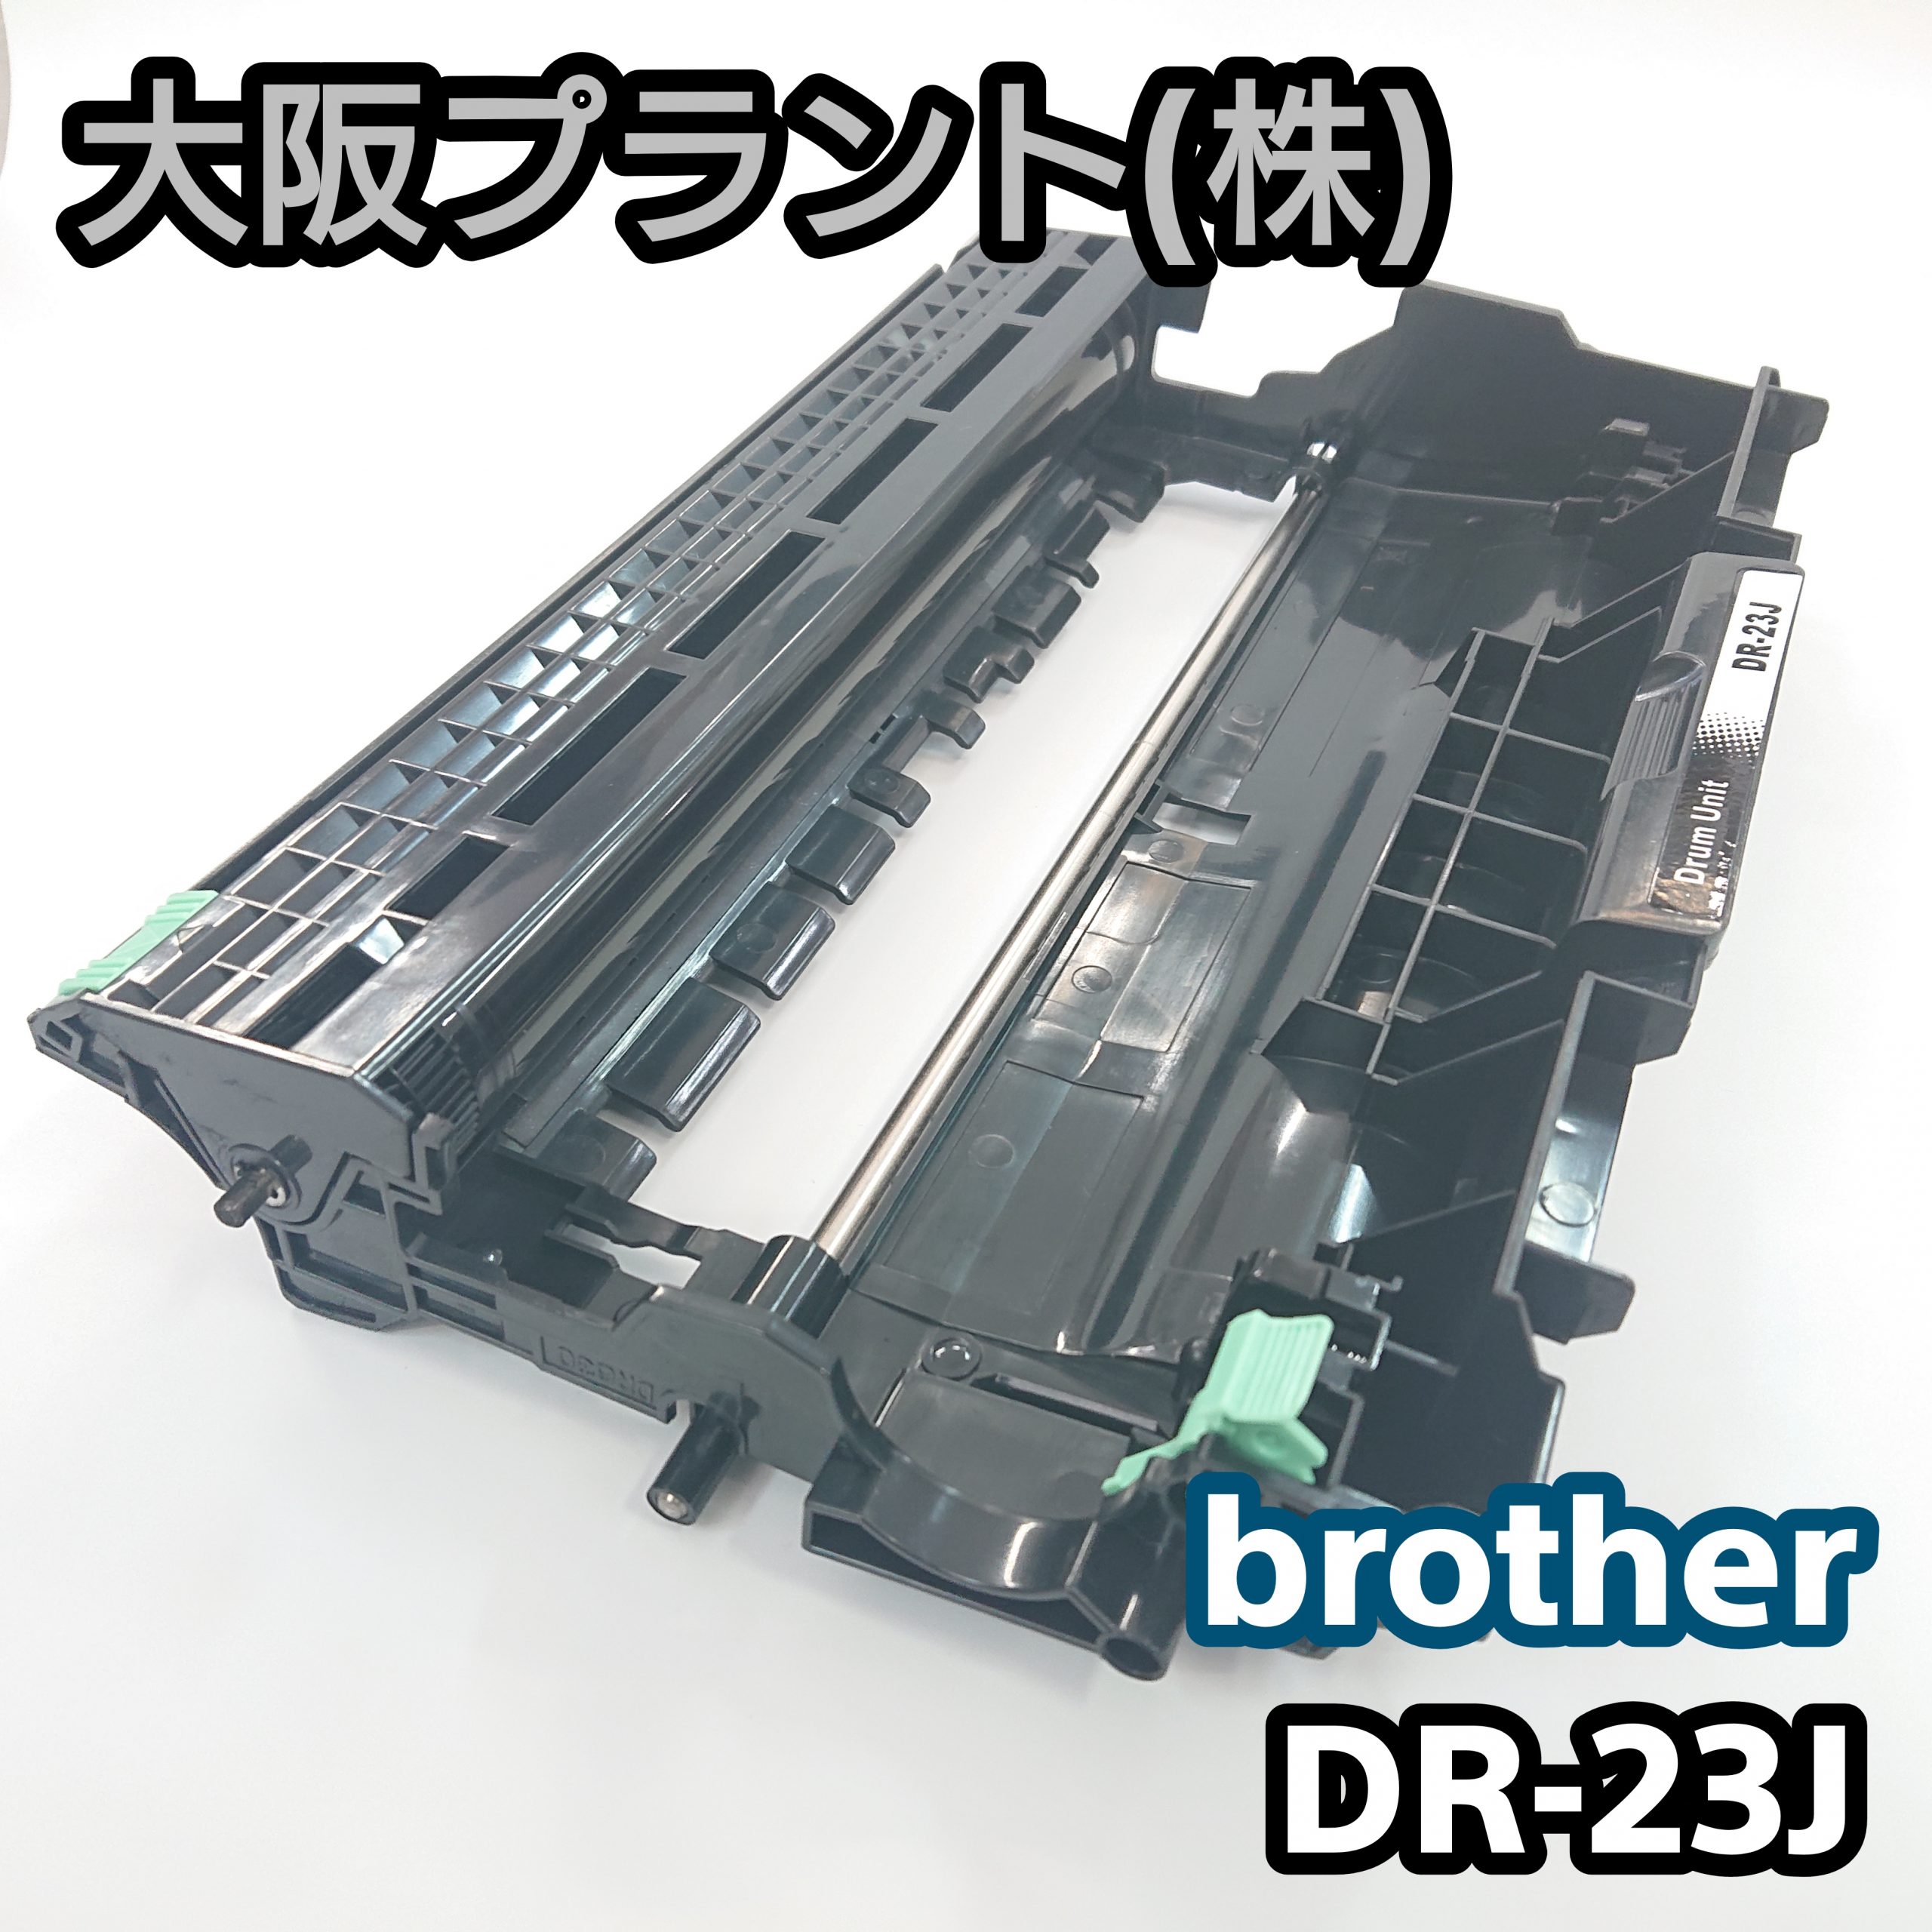 Recyclenet【大阪プラント】再生 ブラザー DR-23J No.03 - PC周辺機器